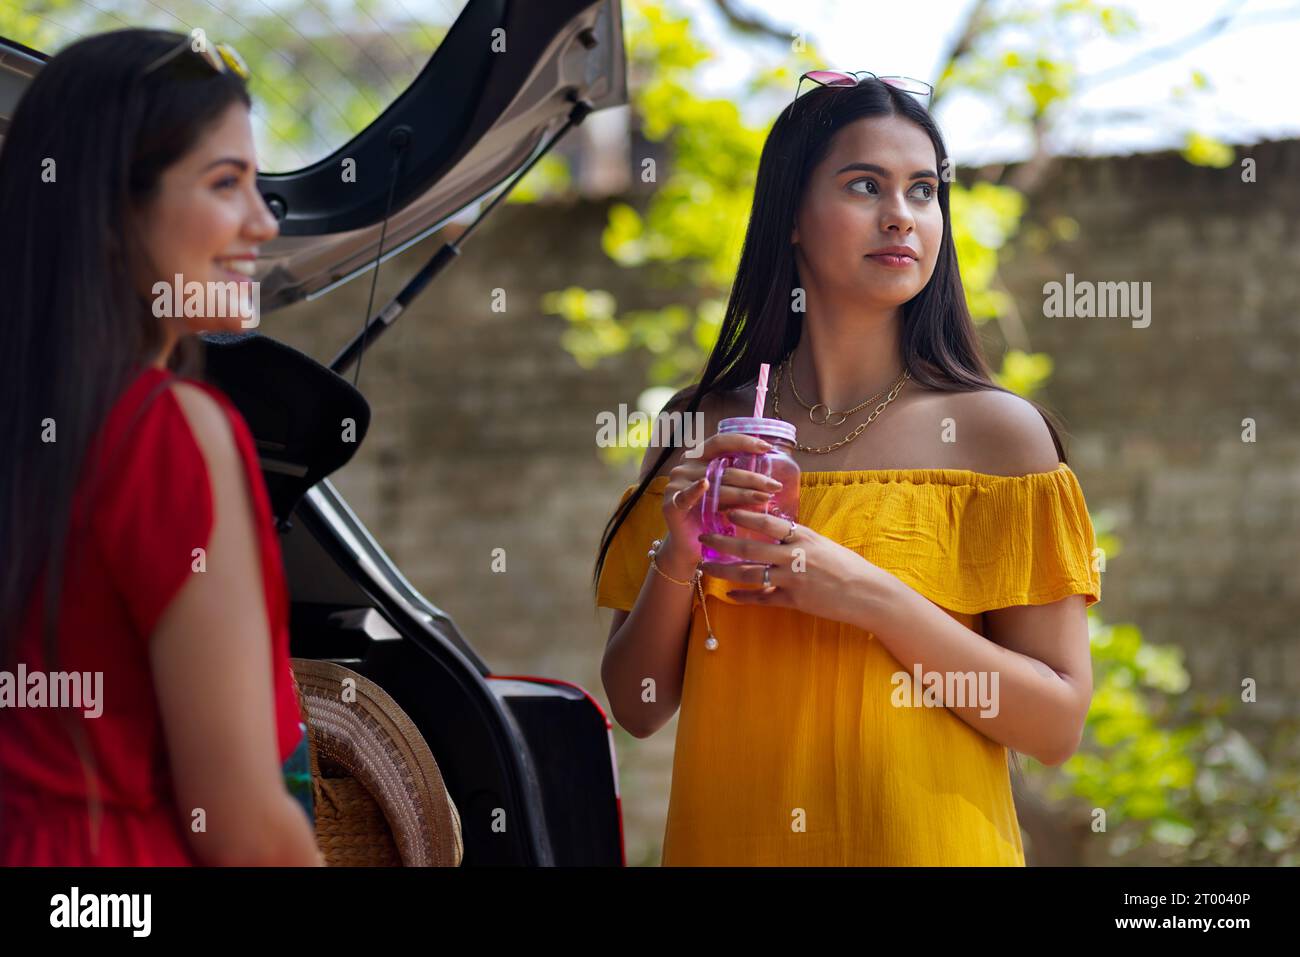 Zwei junge Frauen trinken Entgiftungswasser, während sie sich hinter einem Auto ausruhen Stockfoto